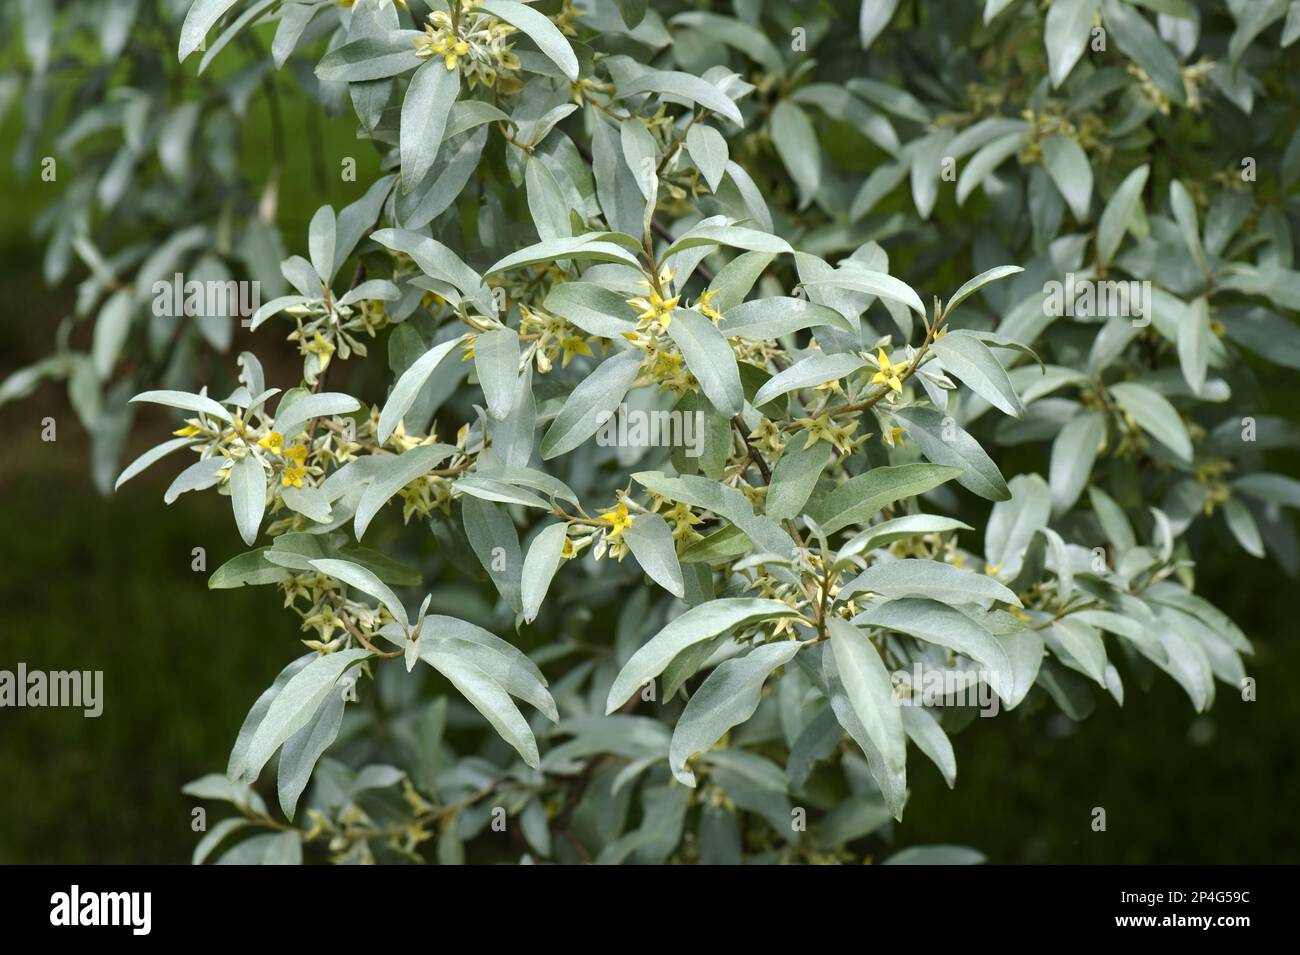 Arbusto ornamental, Elaeagnus angustifolia Mercurio en flor, en un jardín rural Foto de stock